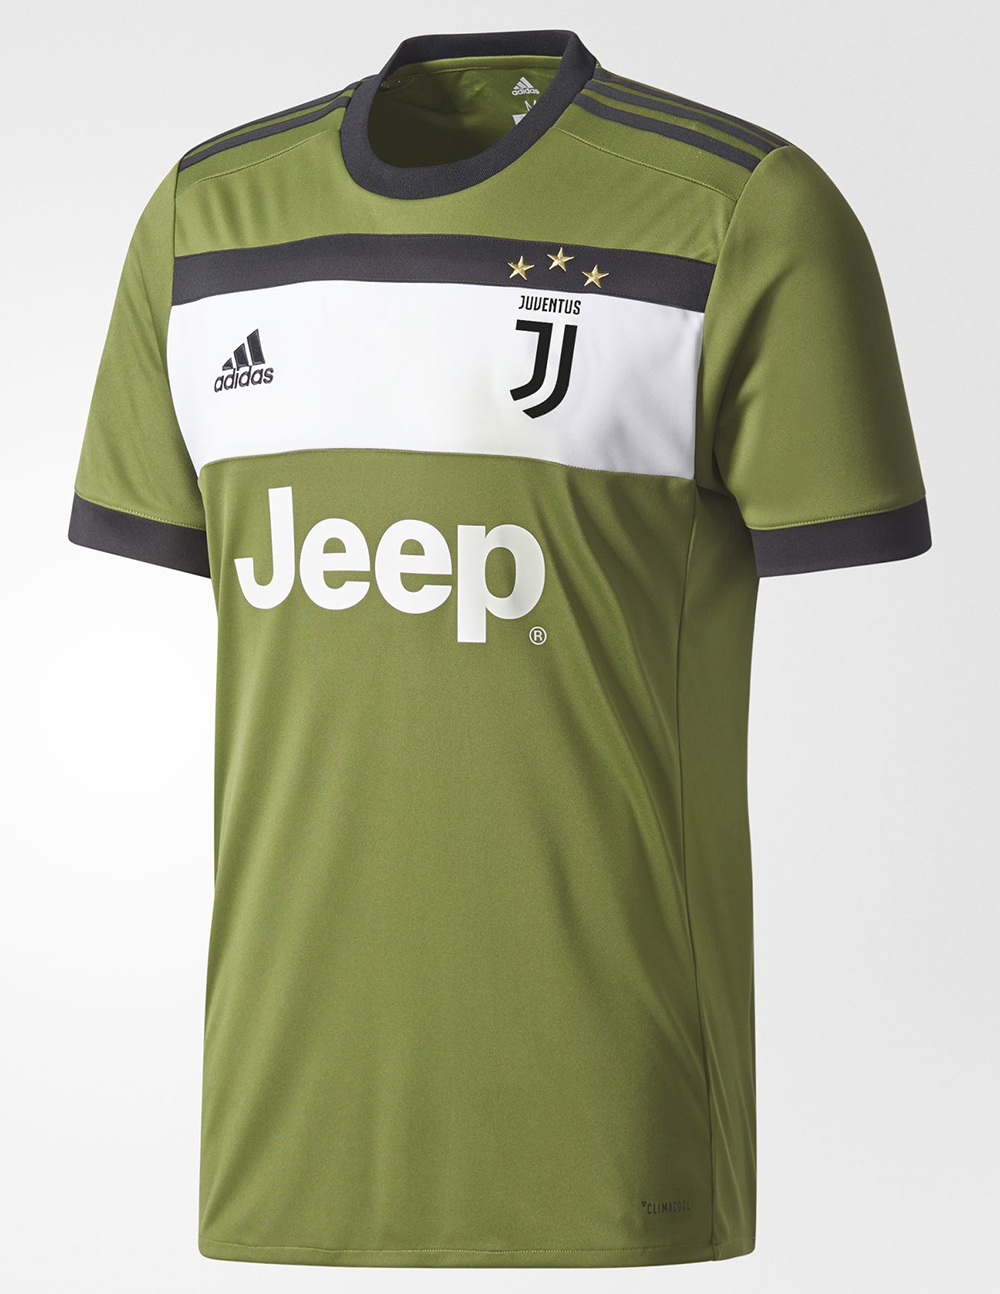 Juventus adidas Third Kit 2017 18